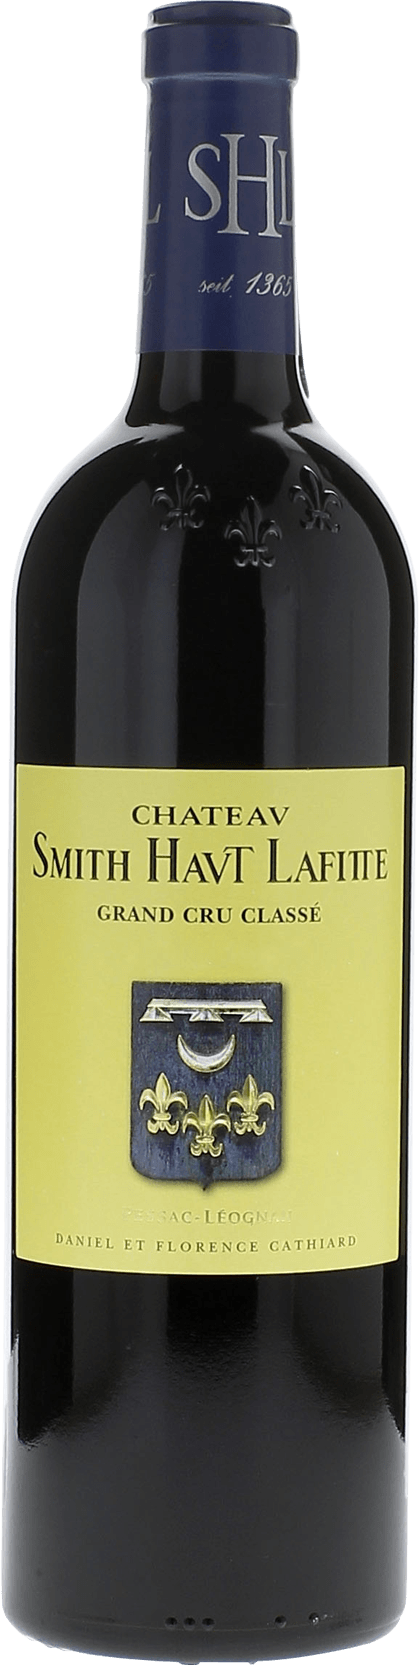 Smith haut lafitte 2014 Grand Cru Class Graves, Bordeaux rouge